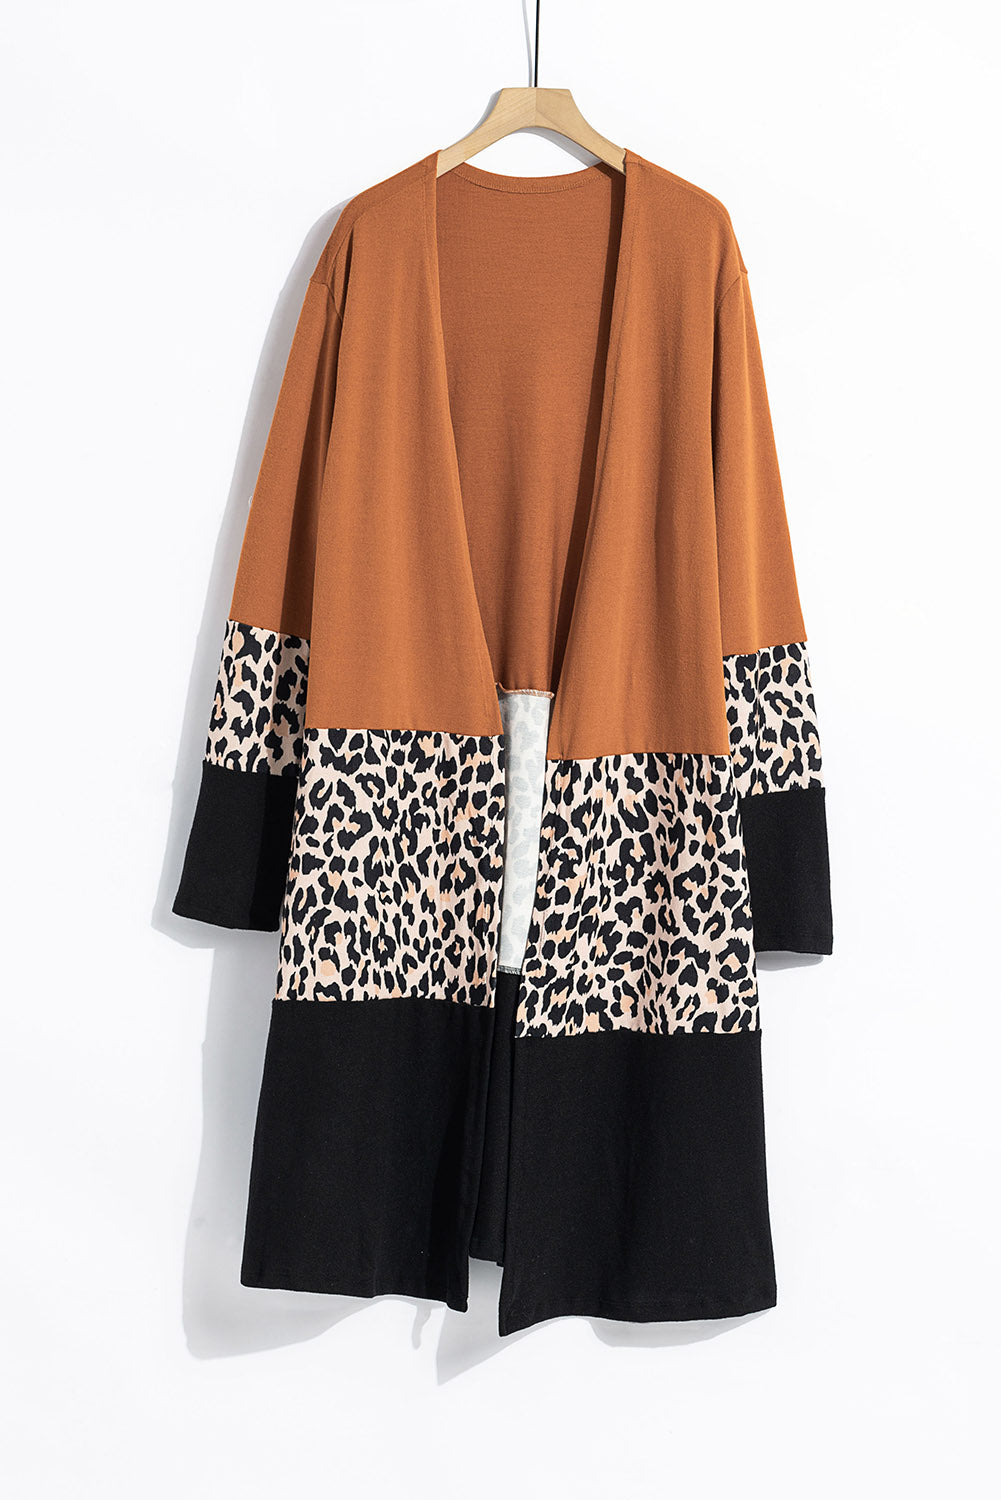 Casual Orange Leopard Splicing Colorblock Cardigan